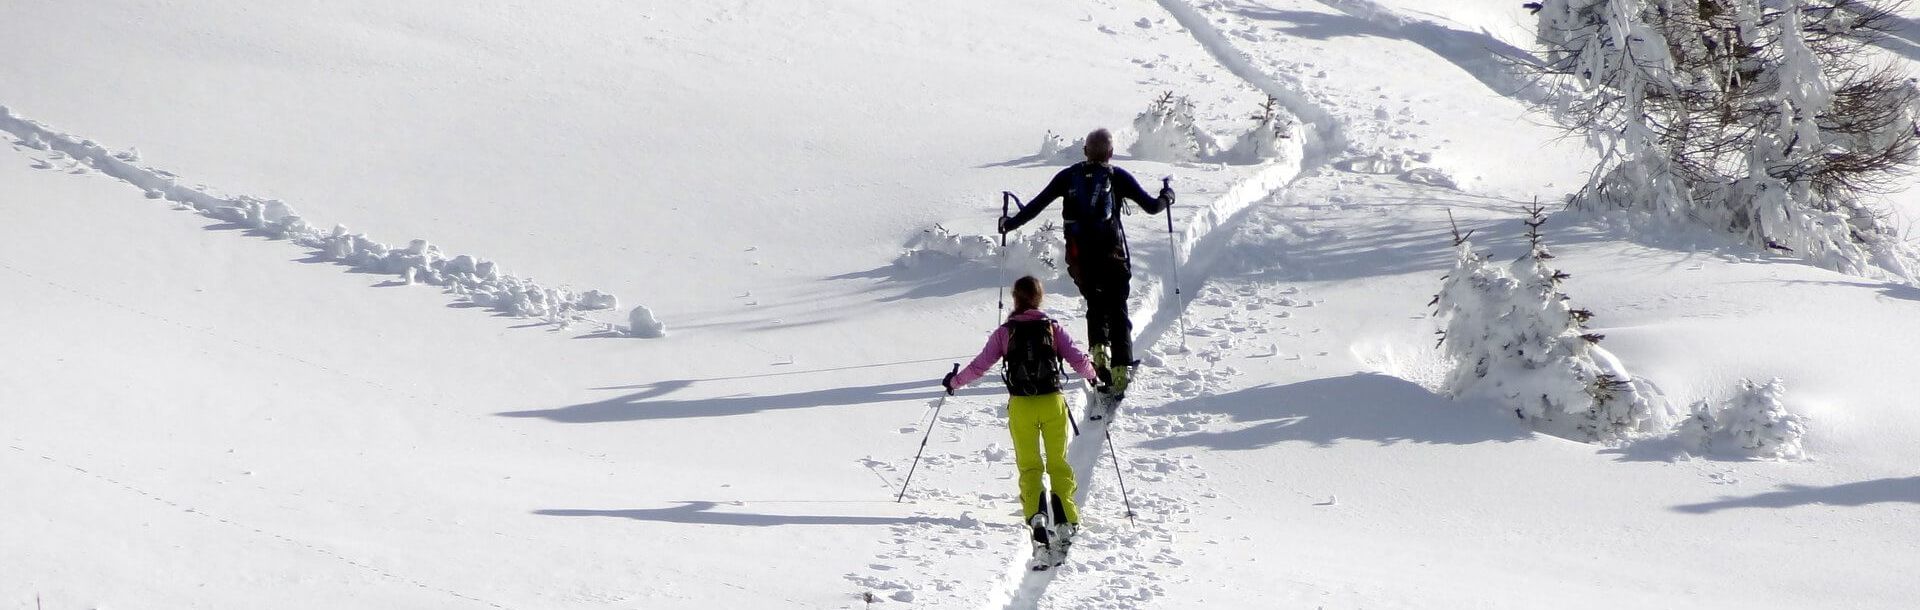 Skitouren in Osttirol - Neue Wege beschreiten | OsttirolerLand.com